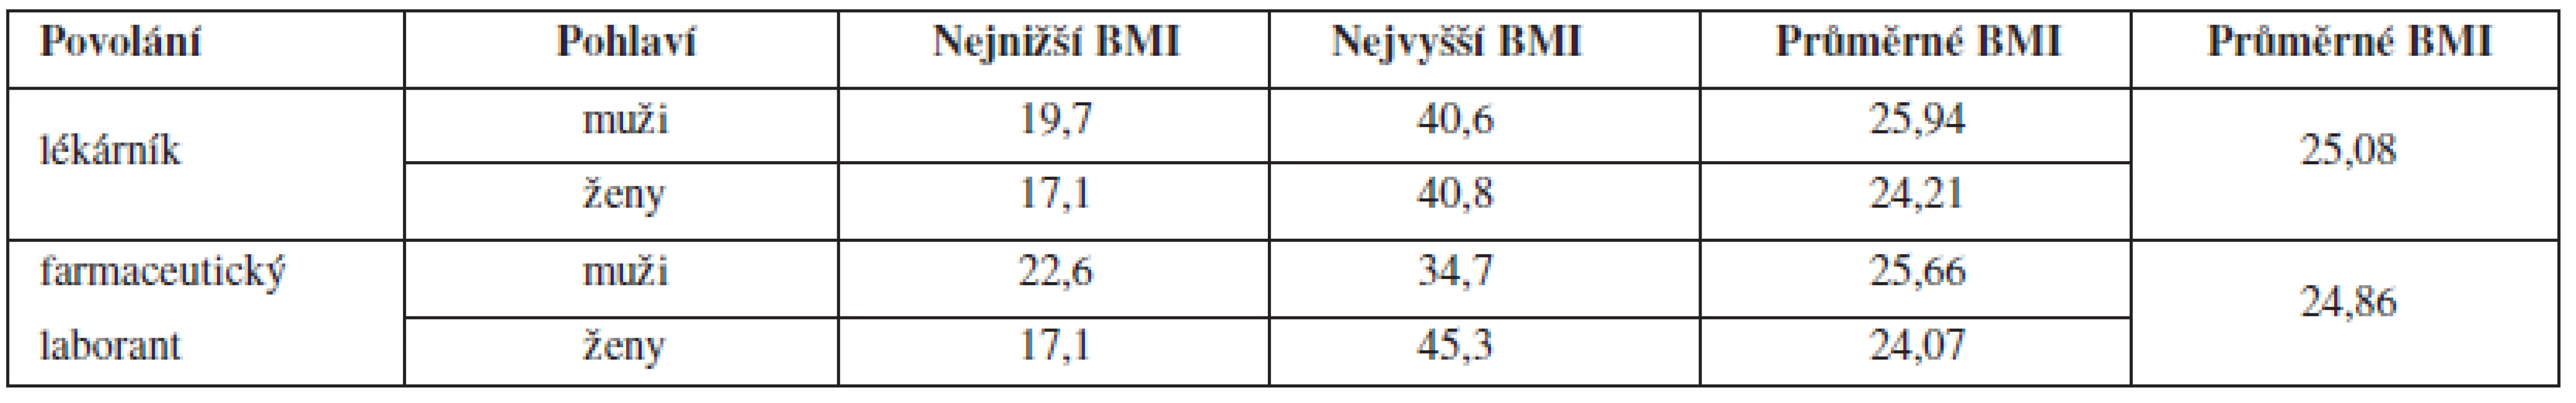 Přehled hodnot BMI u respondentů